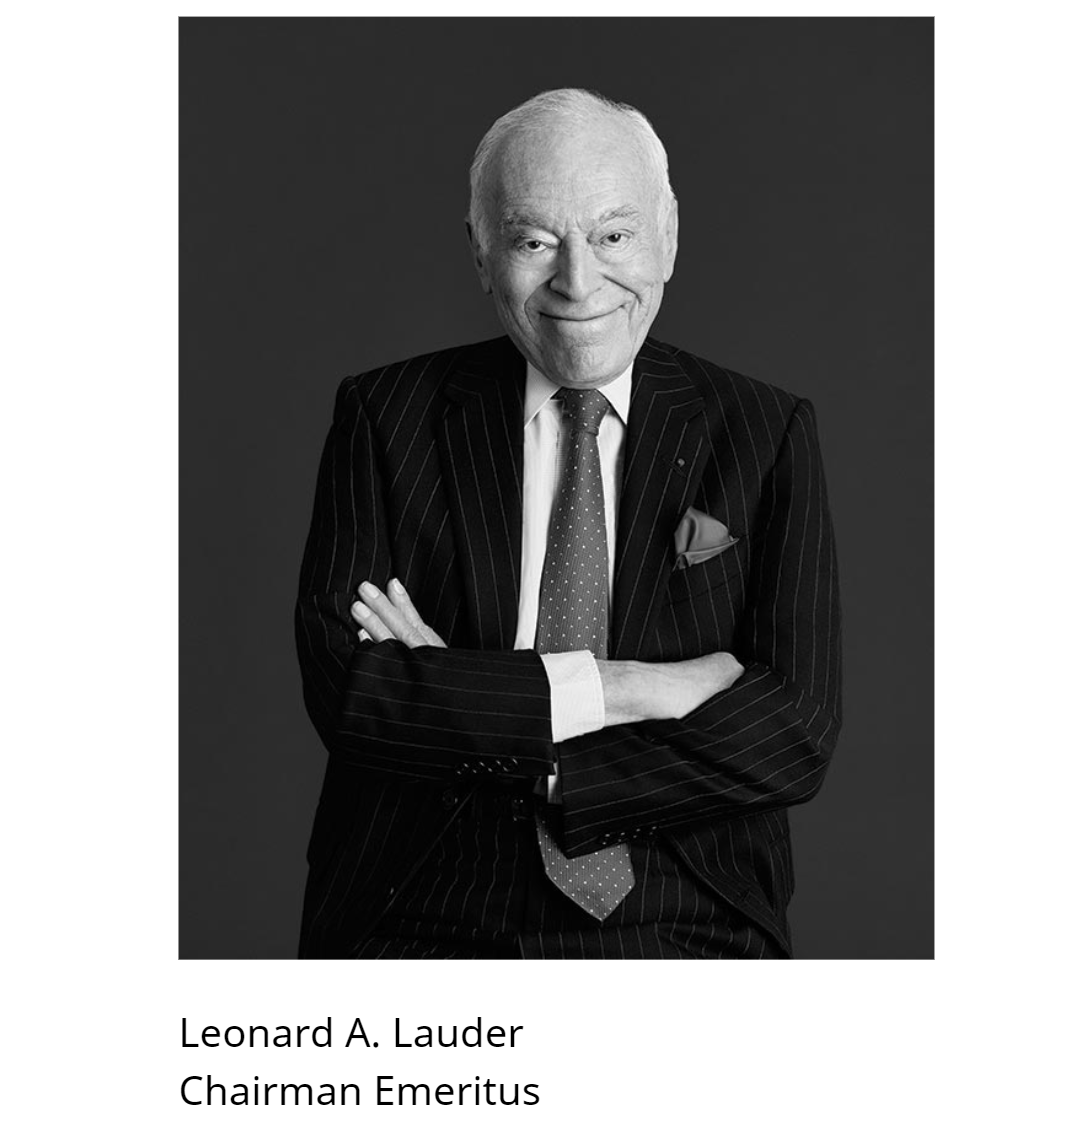 90岁的雅诗兰黛家族掌门人 Leonard A. Lauder 将董事会席位交予次子，将继续担任名誉主席及“首席教育官”